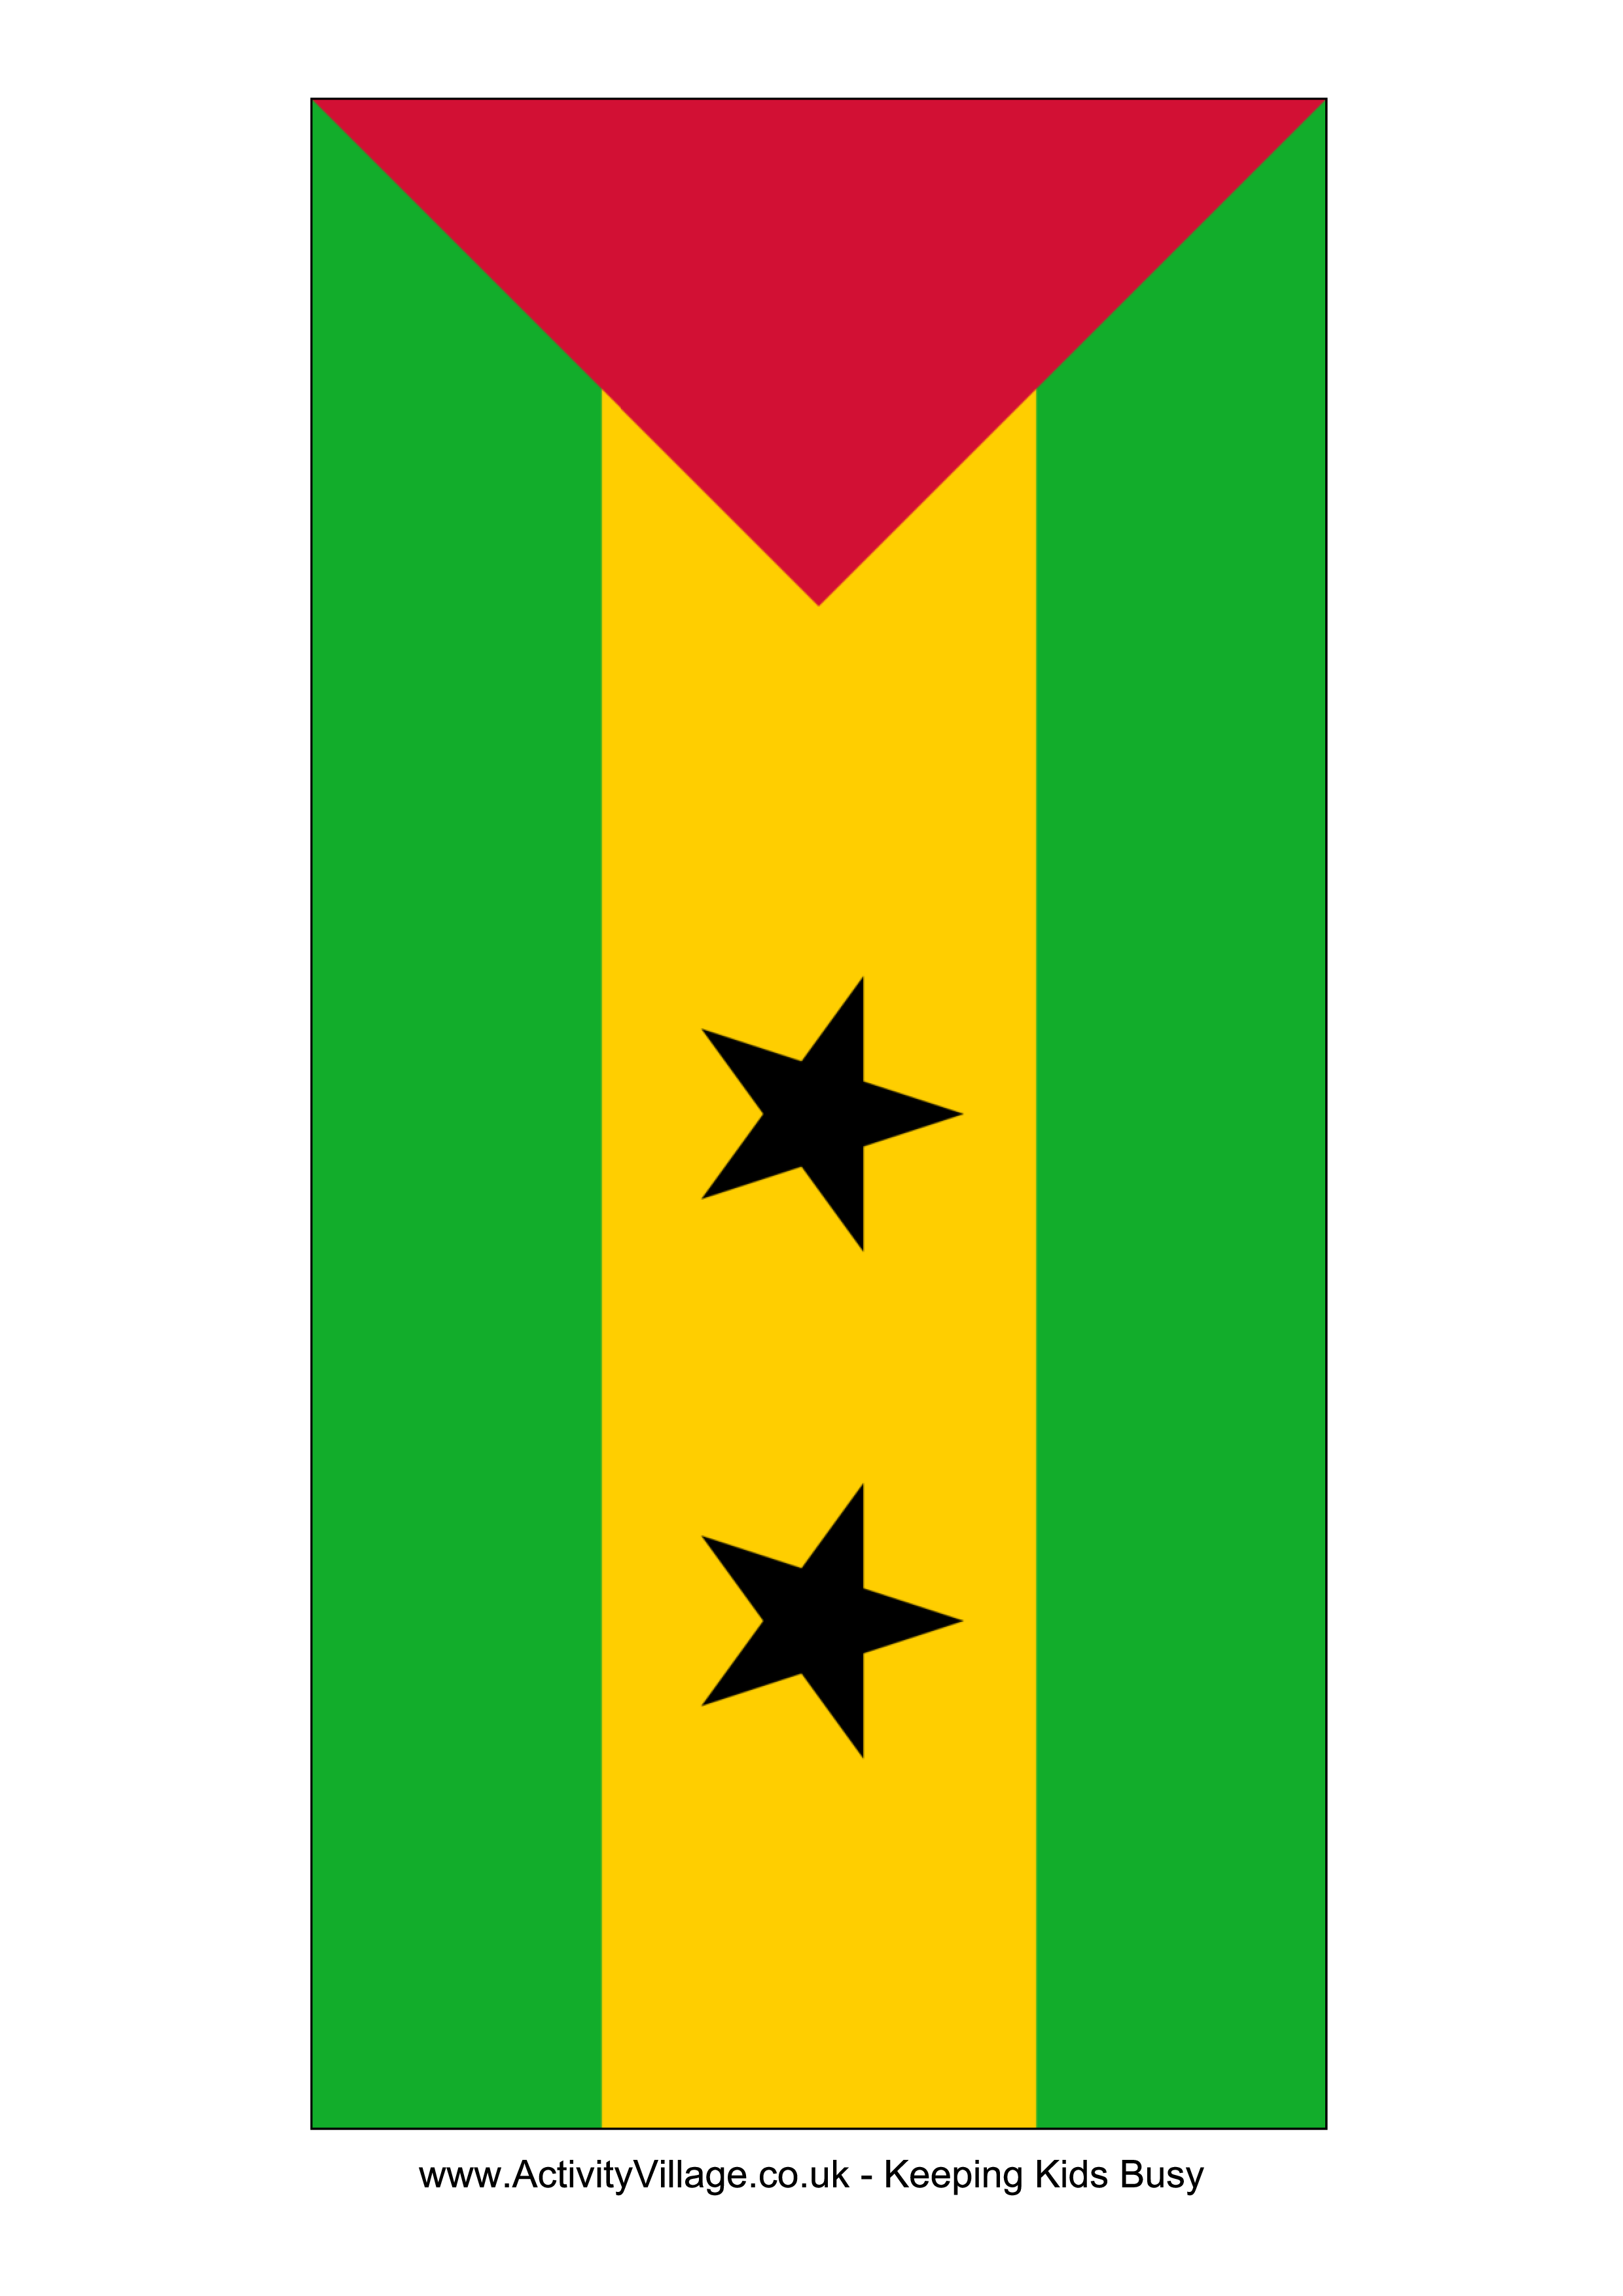 Sao Tome And Principe Flag main image